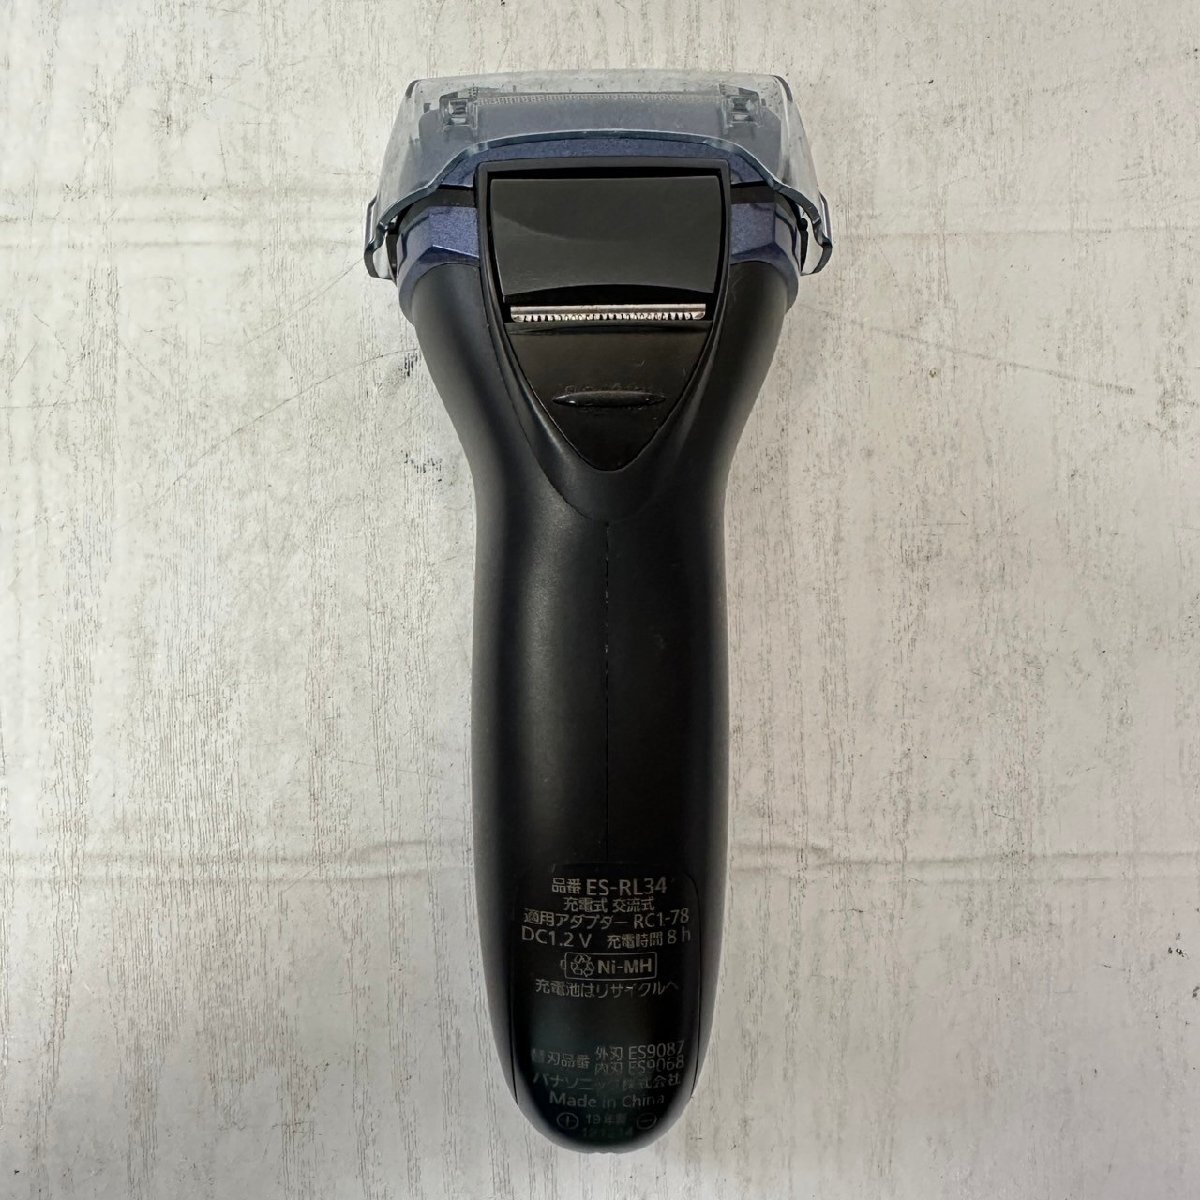 パナソニック Panasonic メンズシェーバー 電気シェーバー 髭剃り 3枚刃 充電式 青 ブルー ES-RL34-A 6203_画像4